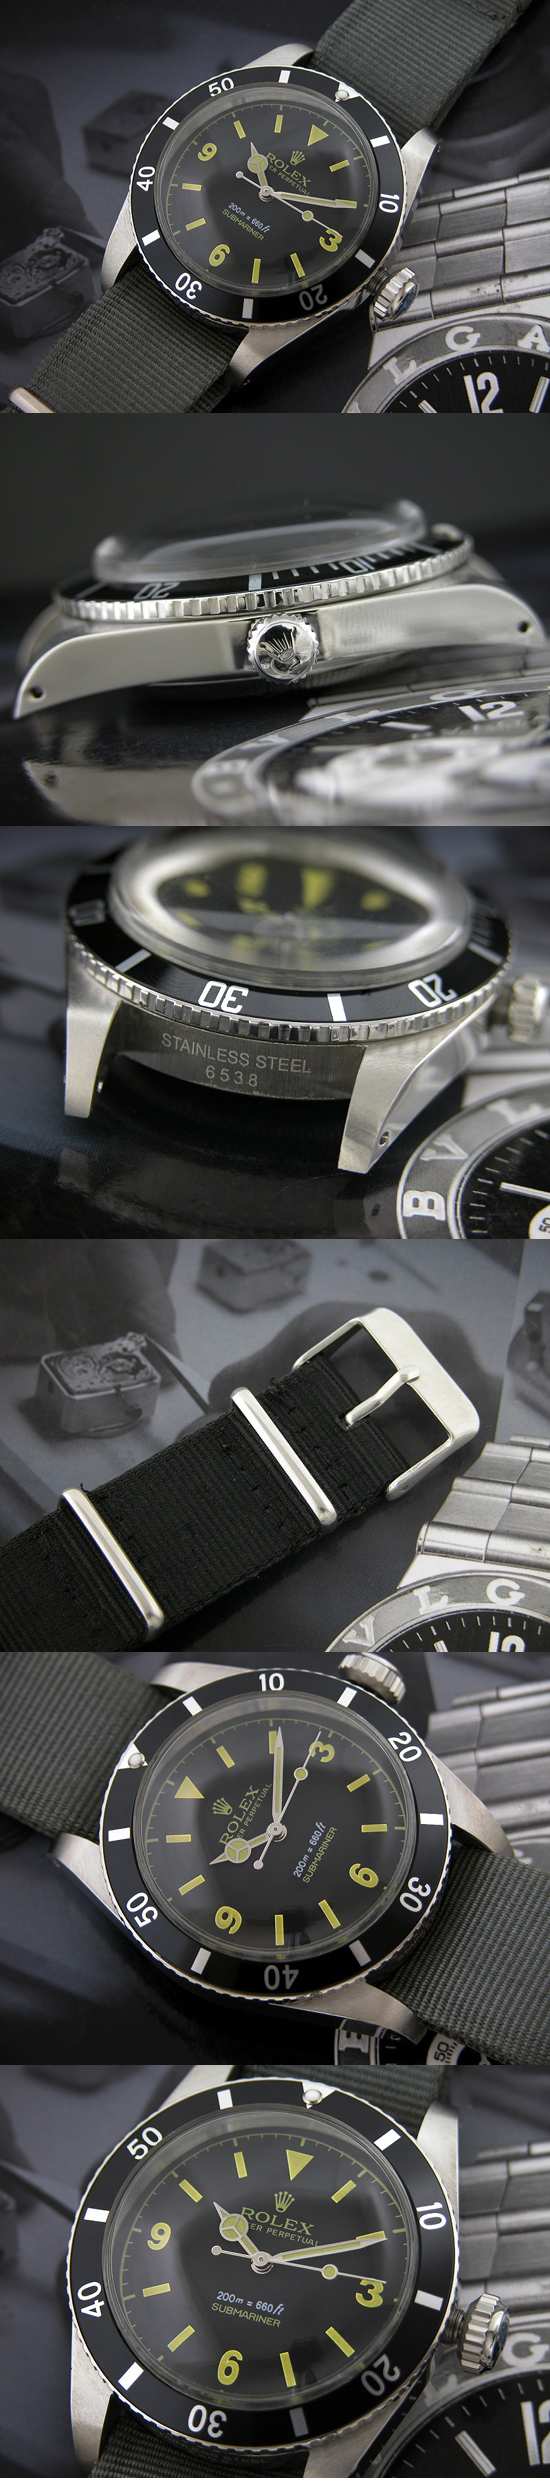 おしゃれなブランド時計がロレックス-サブマリーナ-ROLEX-16610-31-男性用を提供します.